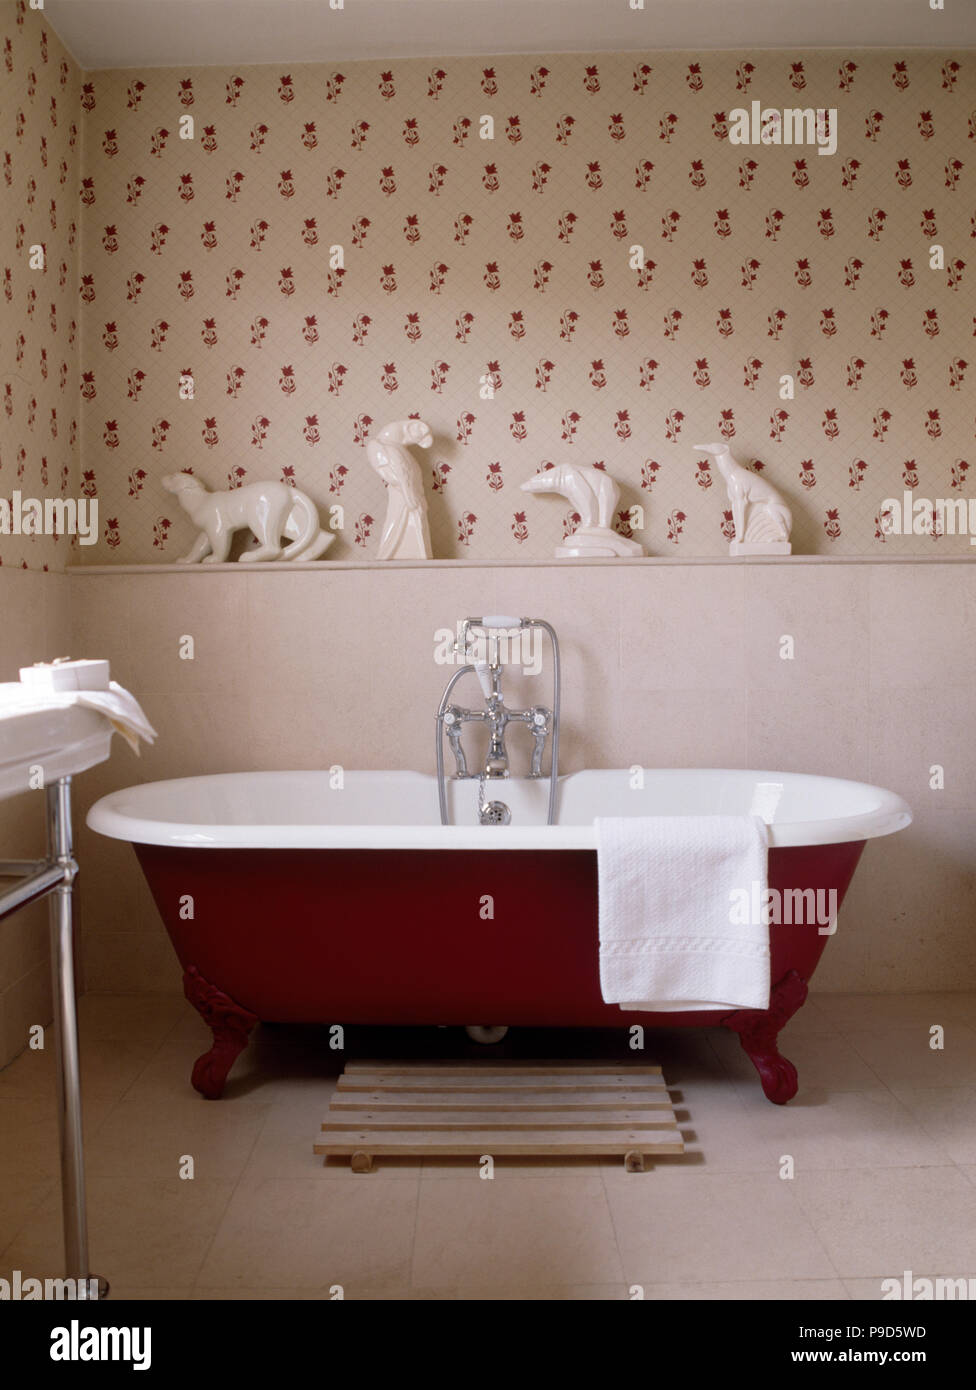 Porcellana Bianca animali sul ripiano sopra un rosso roll top bagno in bagno tradizionale con red sprigged wallpaper Foto Stock